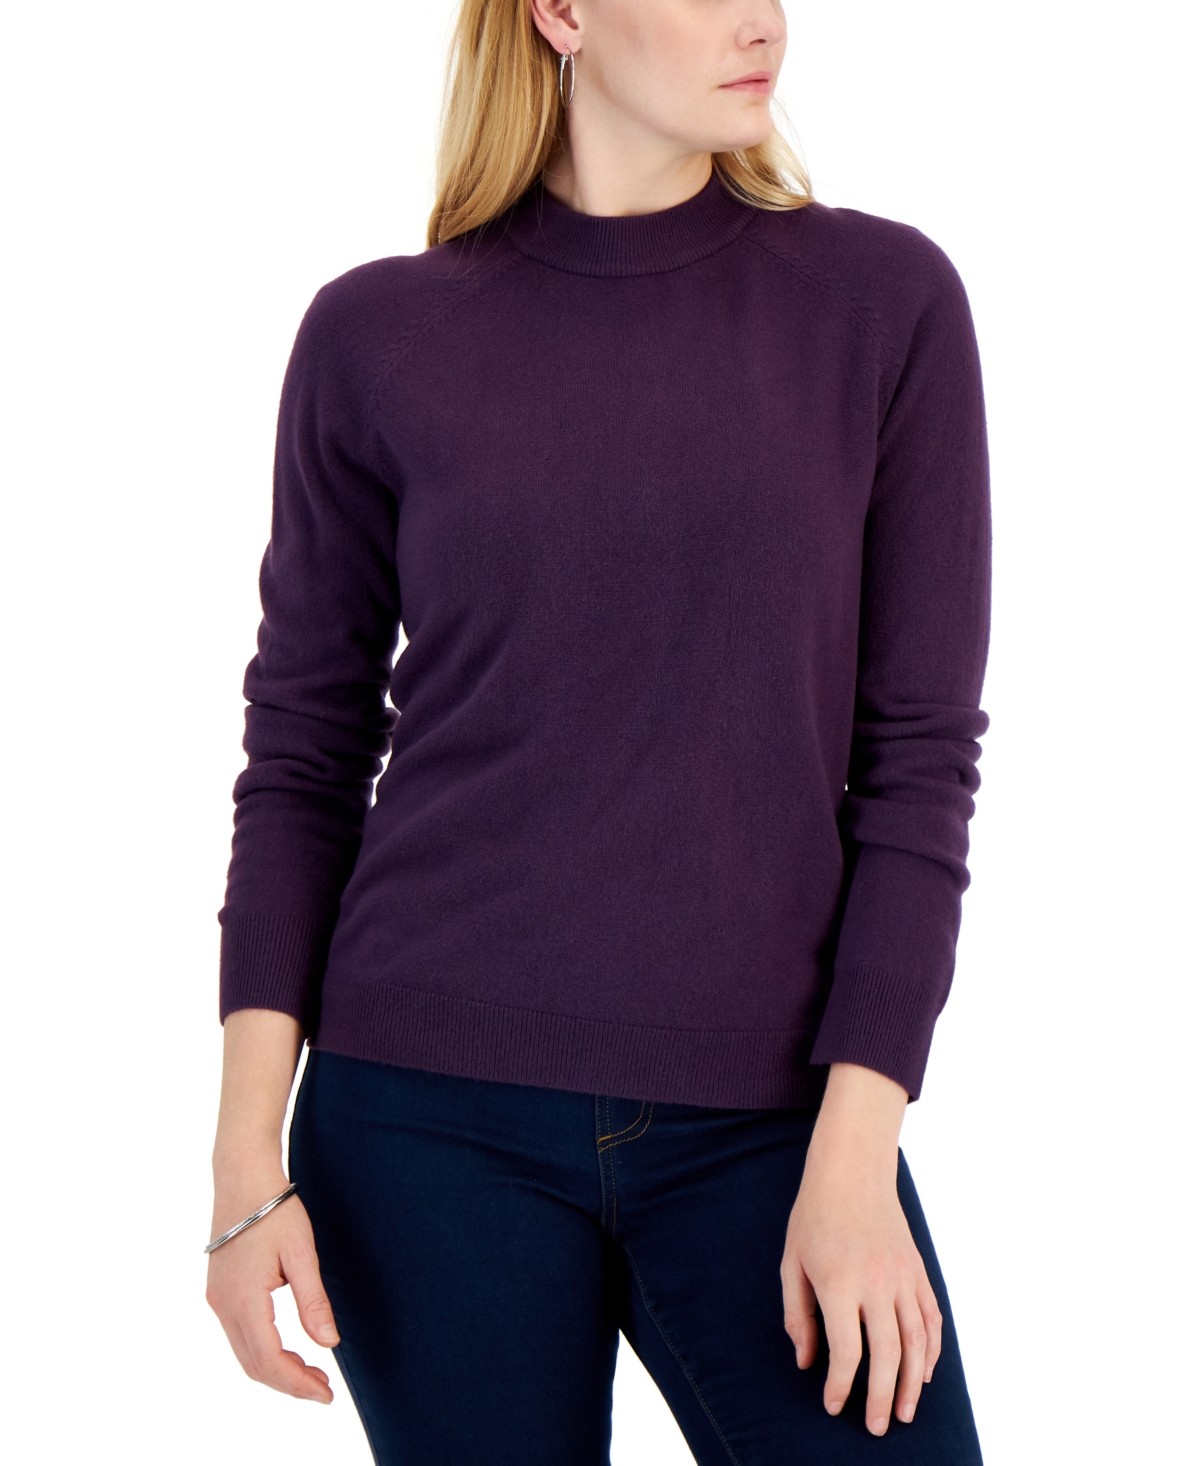 Women's Zip-Back Mock-Neck Sweater, Created for Macy's - Purple Dynasty